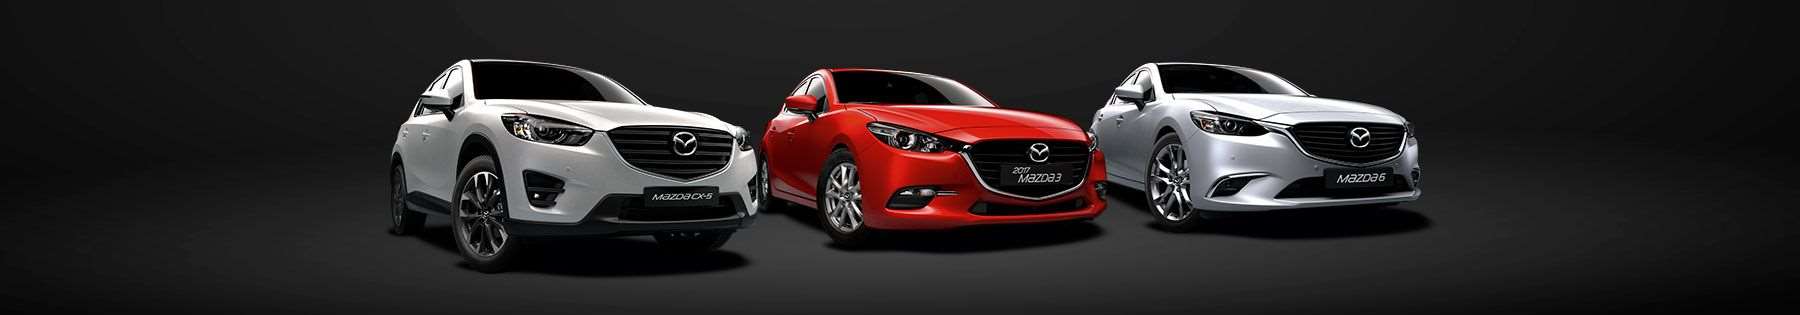 Sell Mazda Sydney 